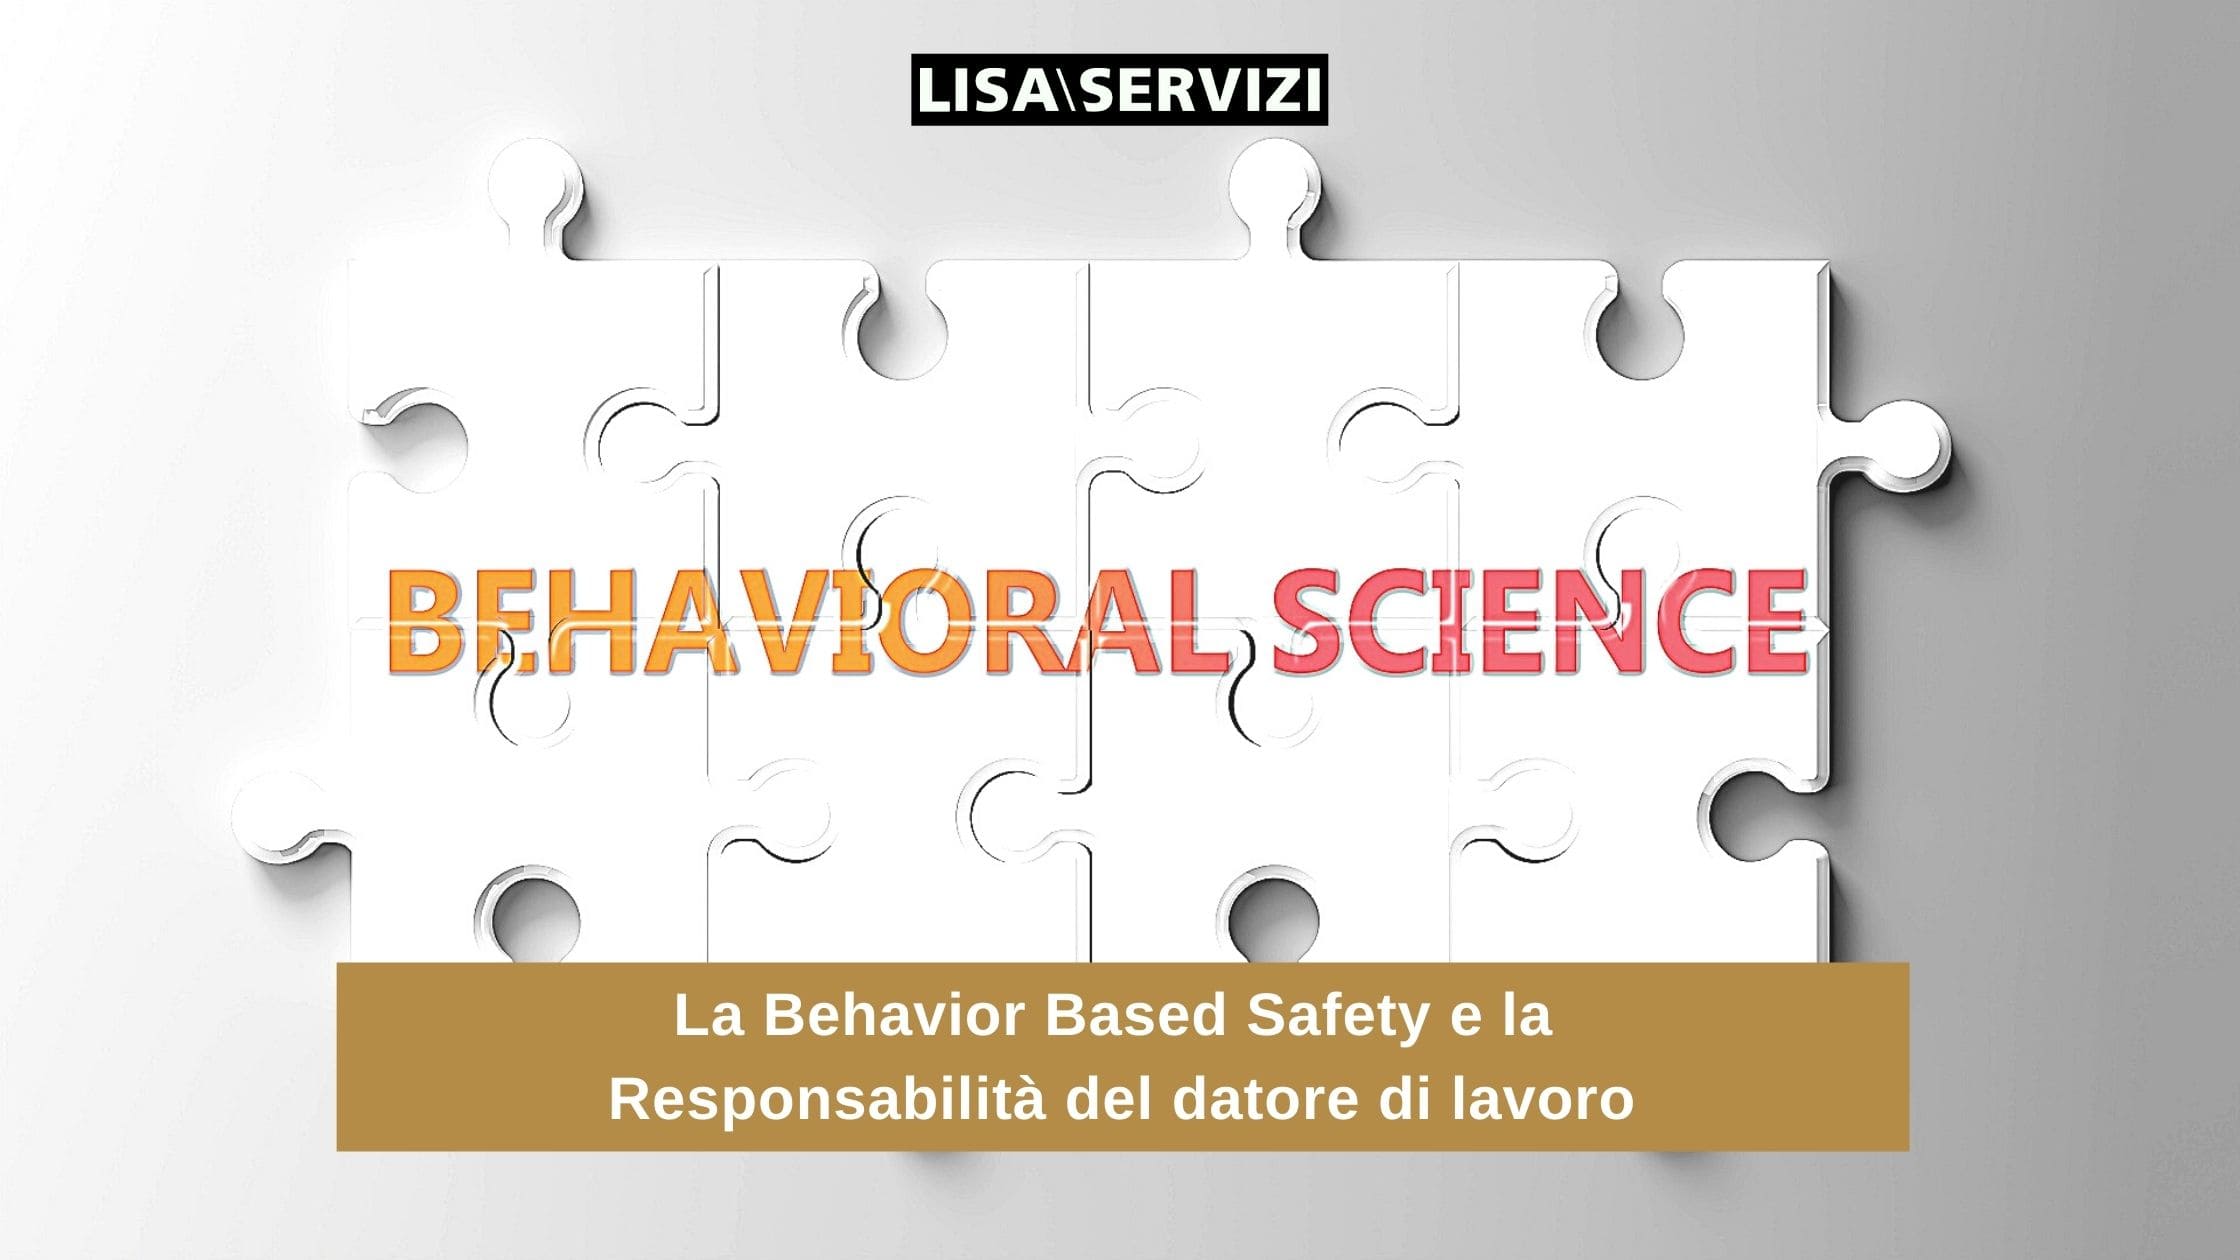 La Behavior Based Safety e la responsabilità del datore di lavoro